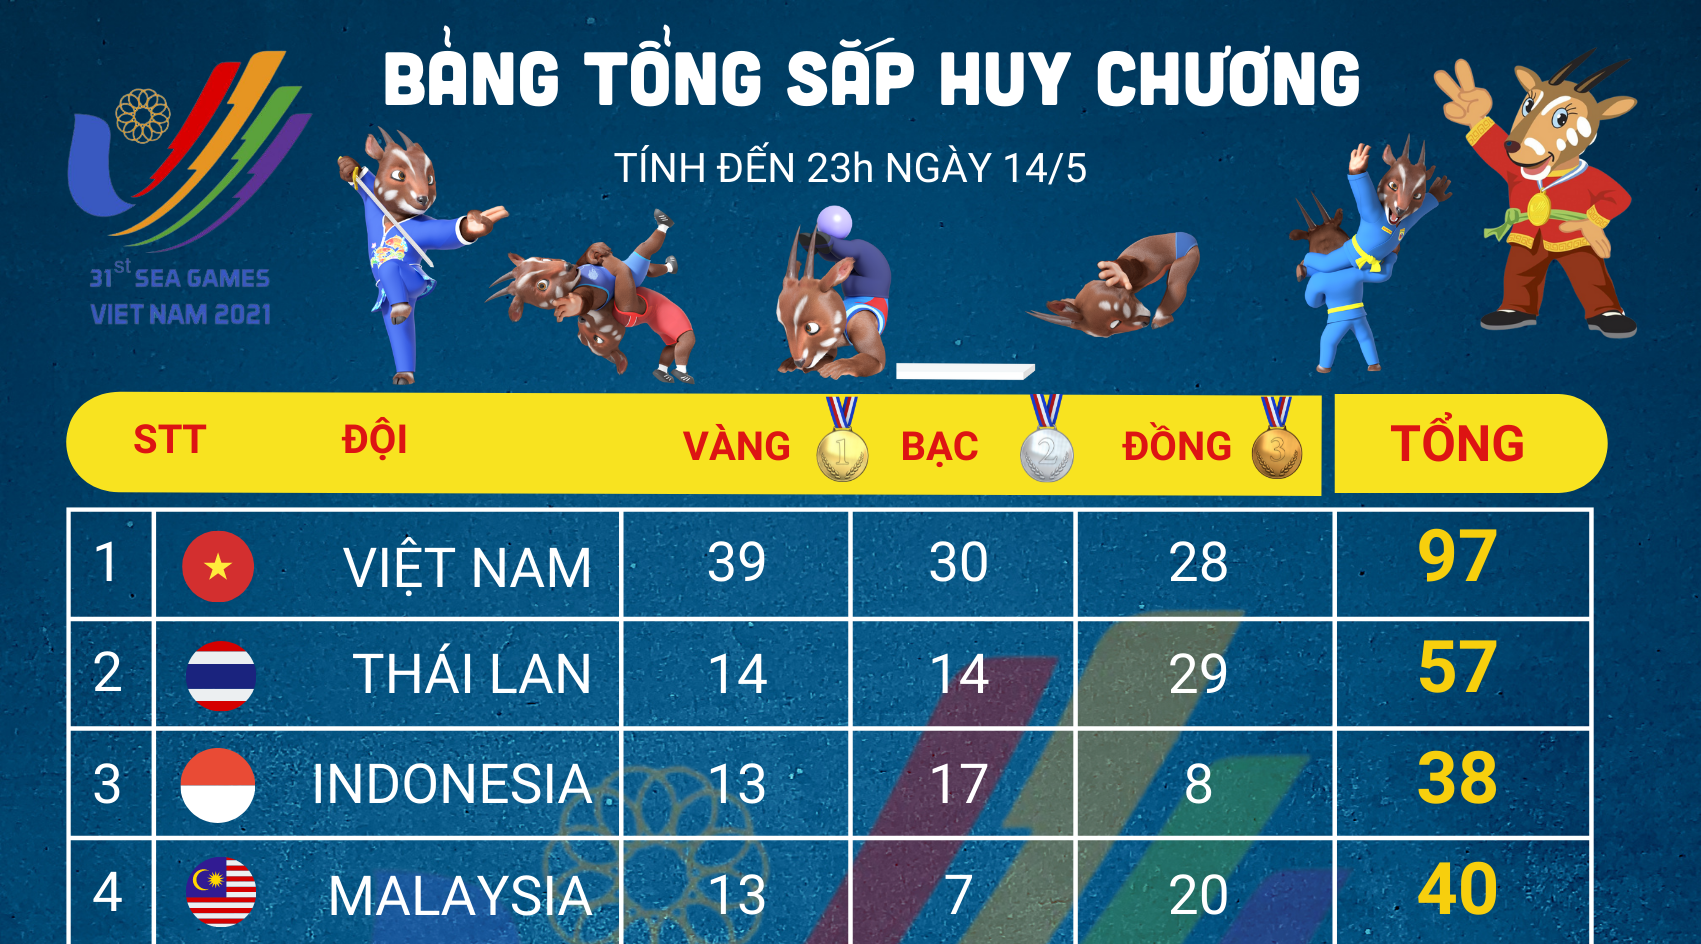 Bảng tổng sắp huy chương SEA Games 31 đến hết ngày 14/5: Việt Nam bỏ xa Thái Lan tới 25 HCV